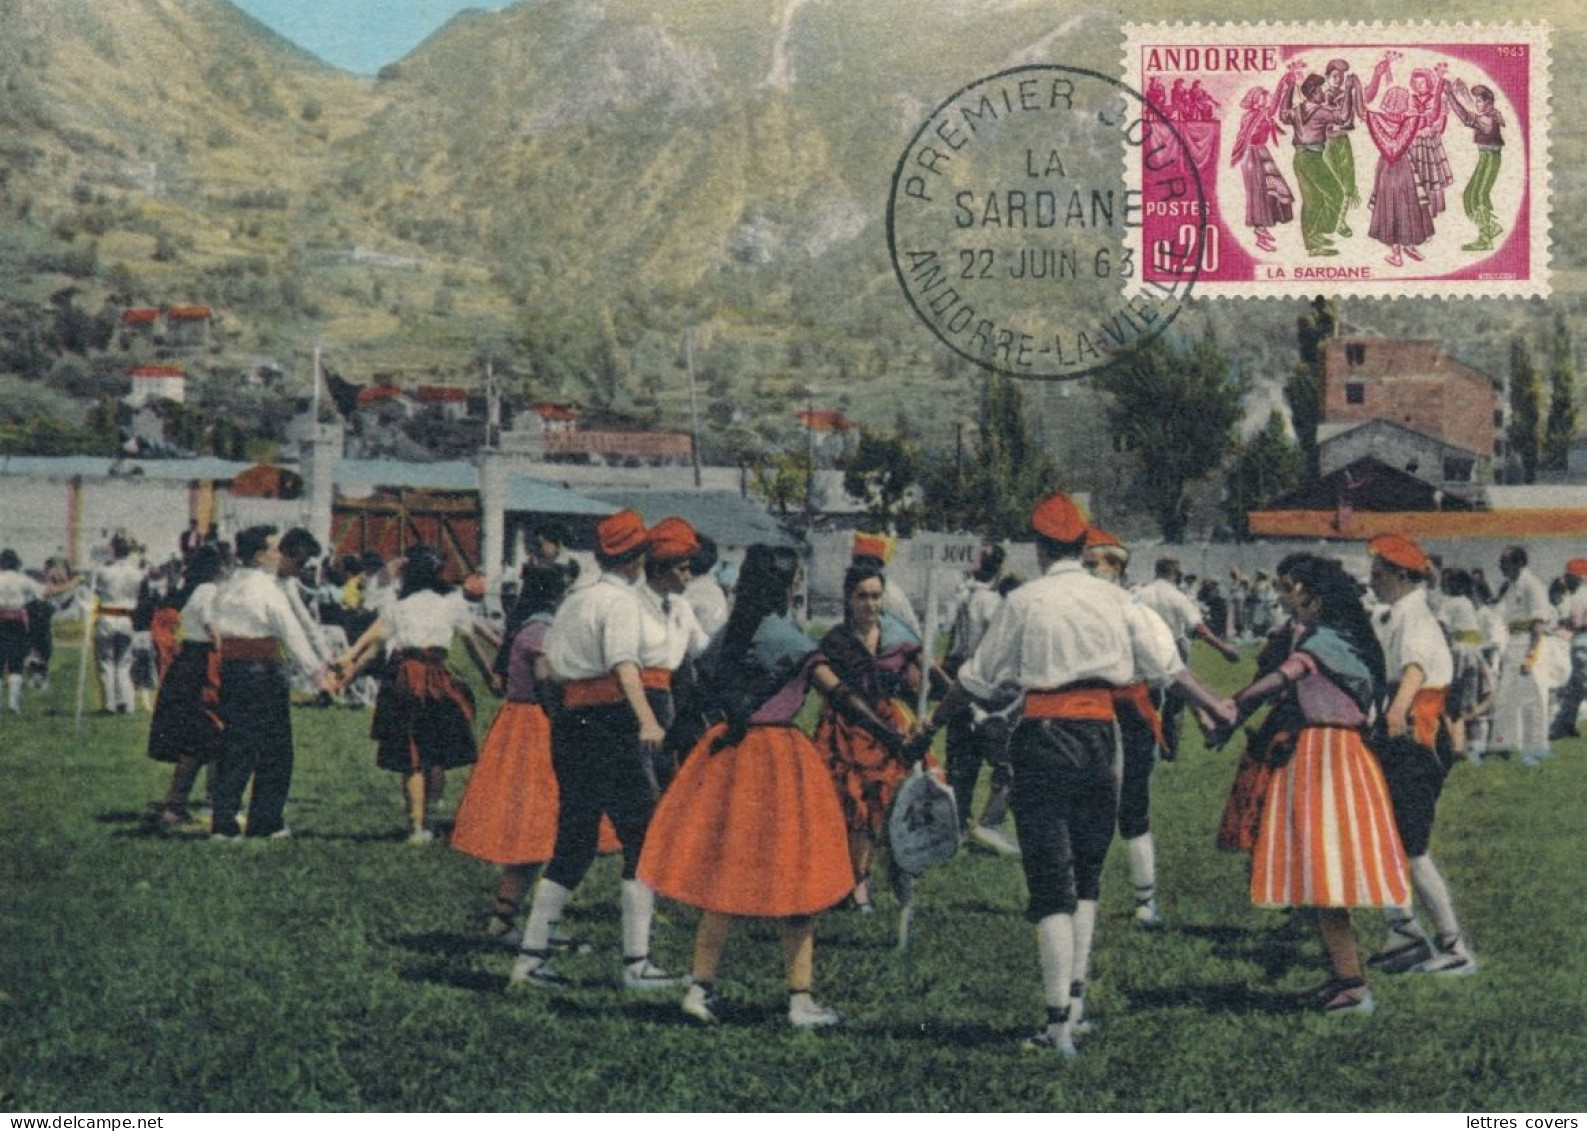 1963 ANDORRE Carte Maximum N°166 0.20 La Sardanne - Andorra Maxi Card PC - Cartes-Maximum (CM)